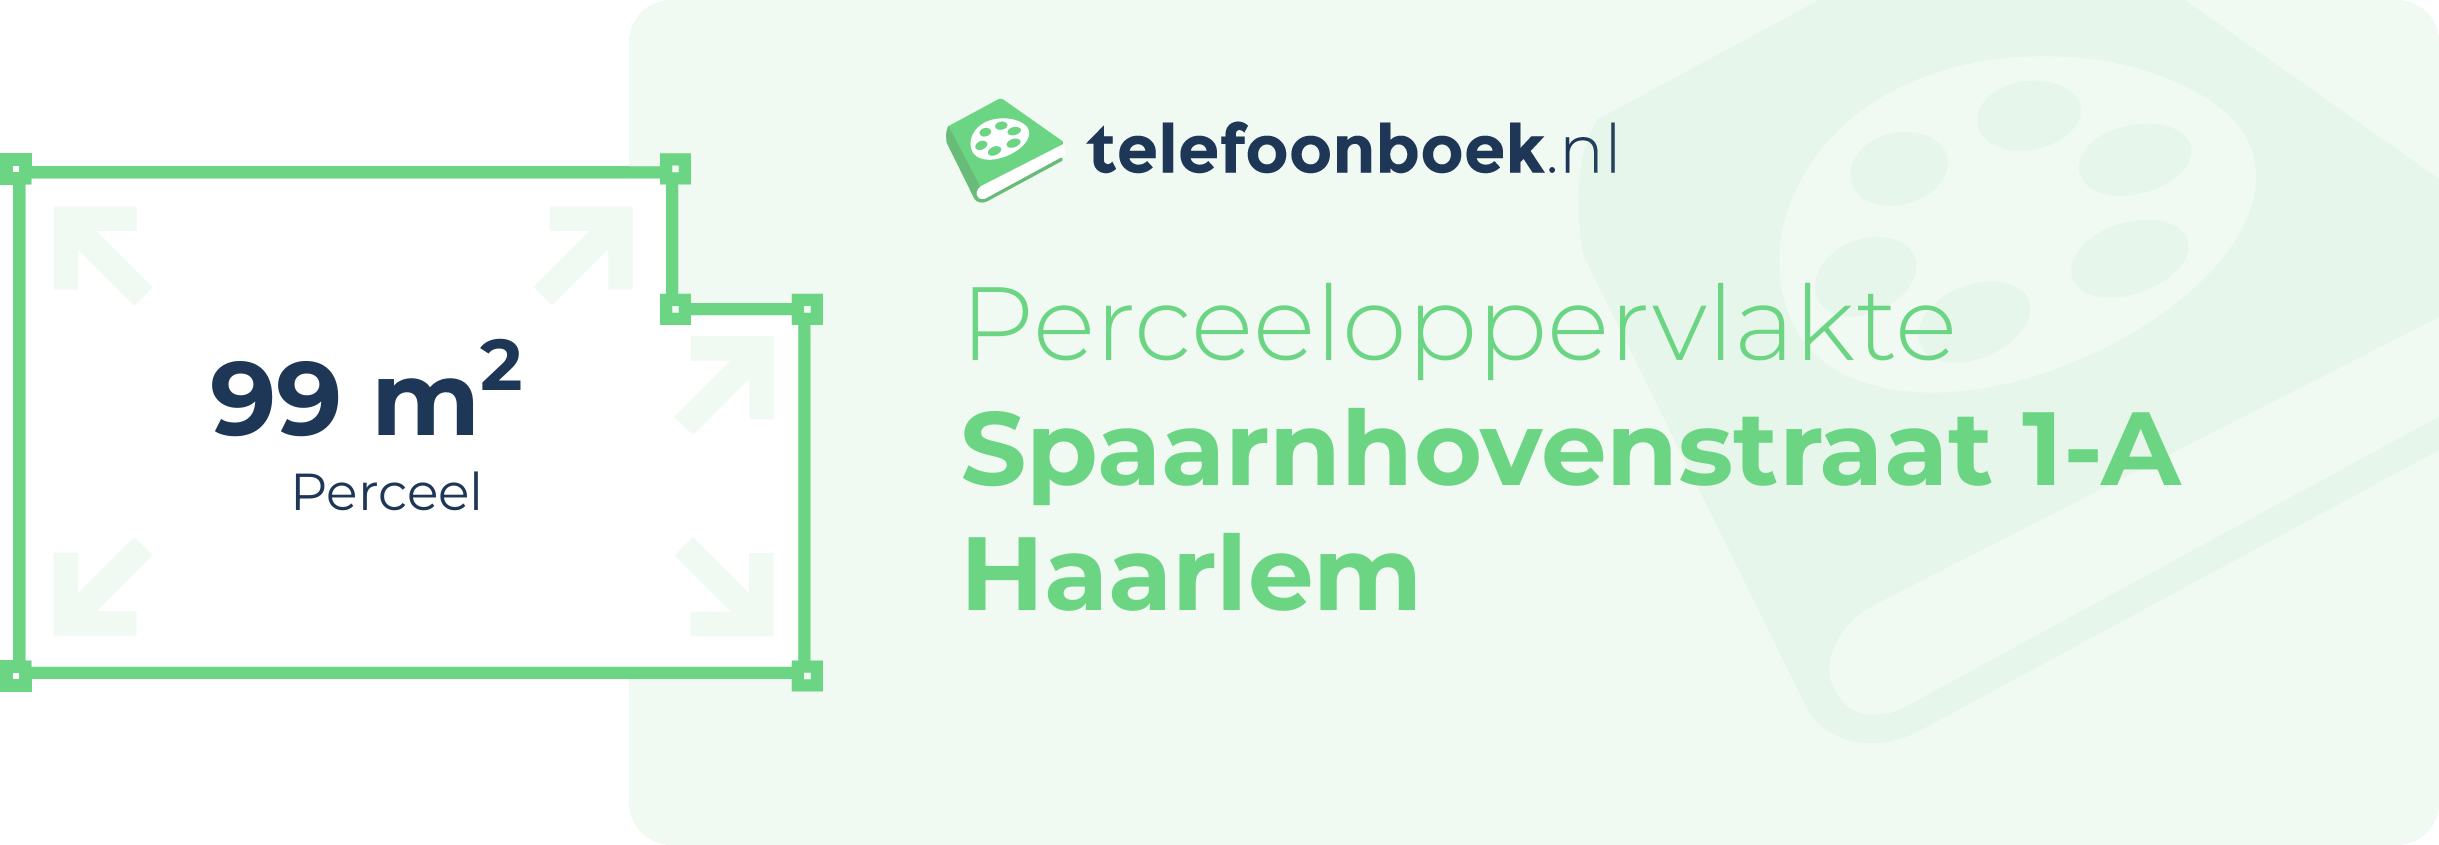 Perceeloppervlakte Spaarnhovenstraat 1-A Haarlem